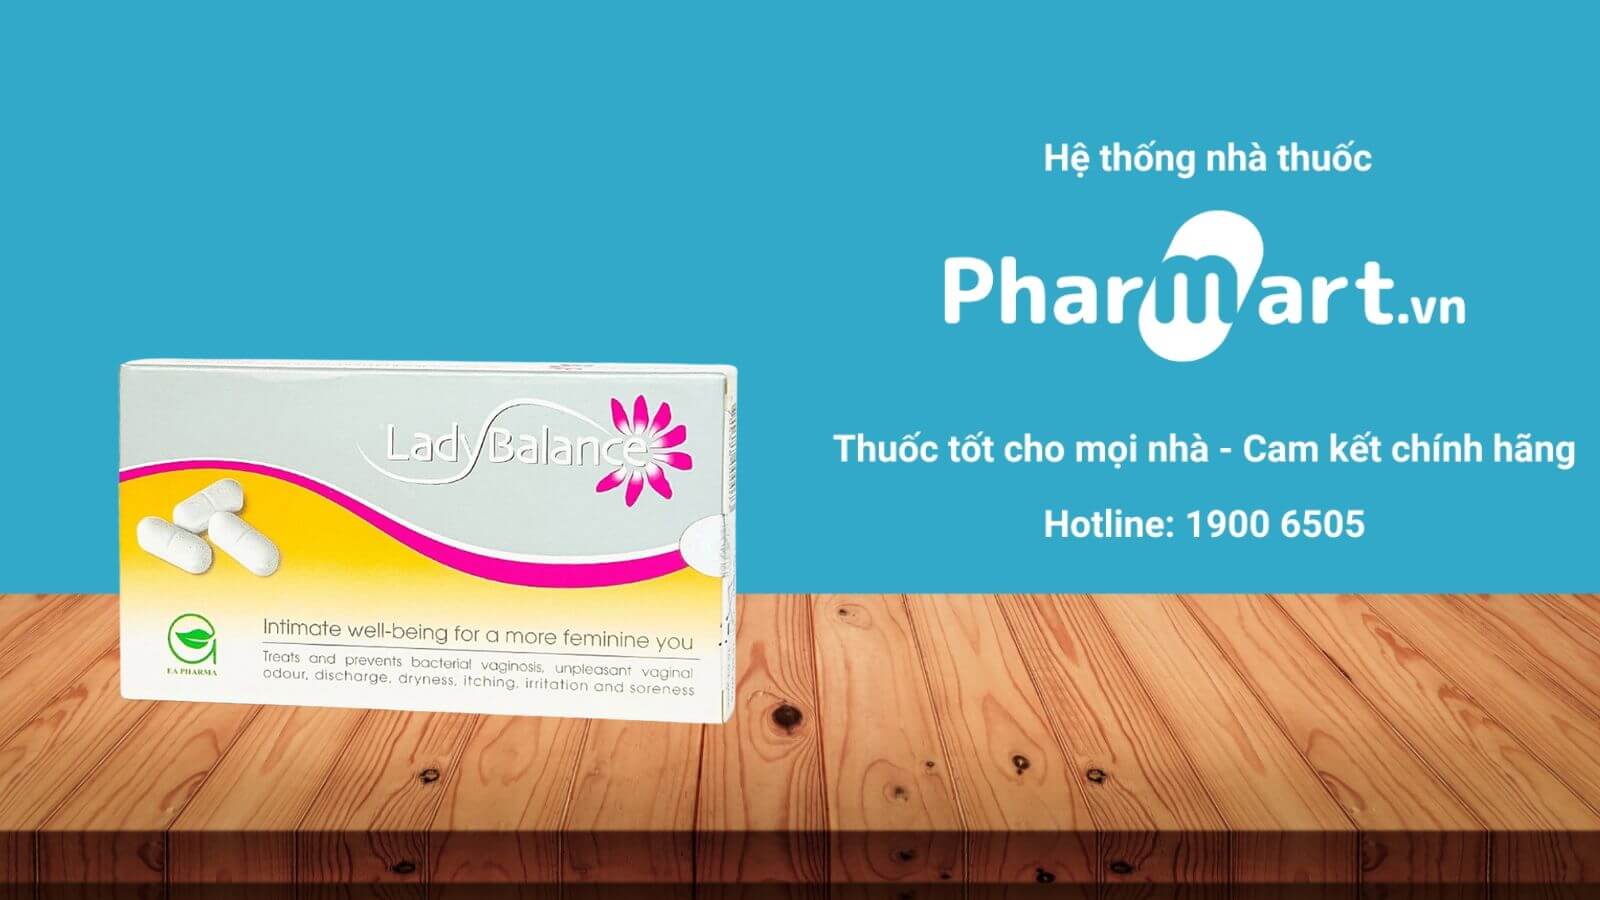 Pharmart.vn - Địa chỉ mua hàng uy tín, chất lượng